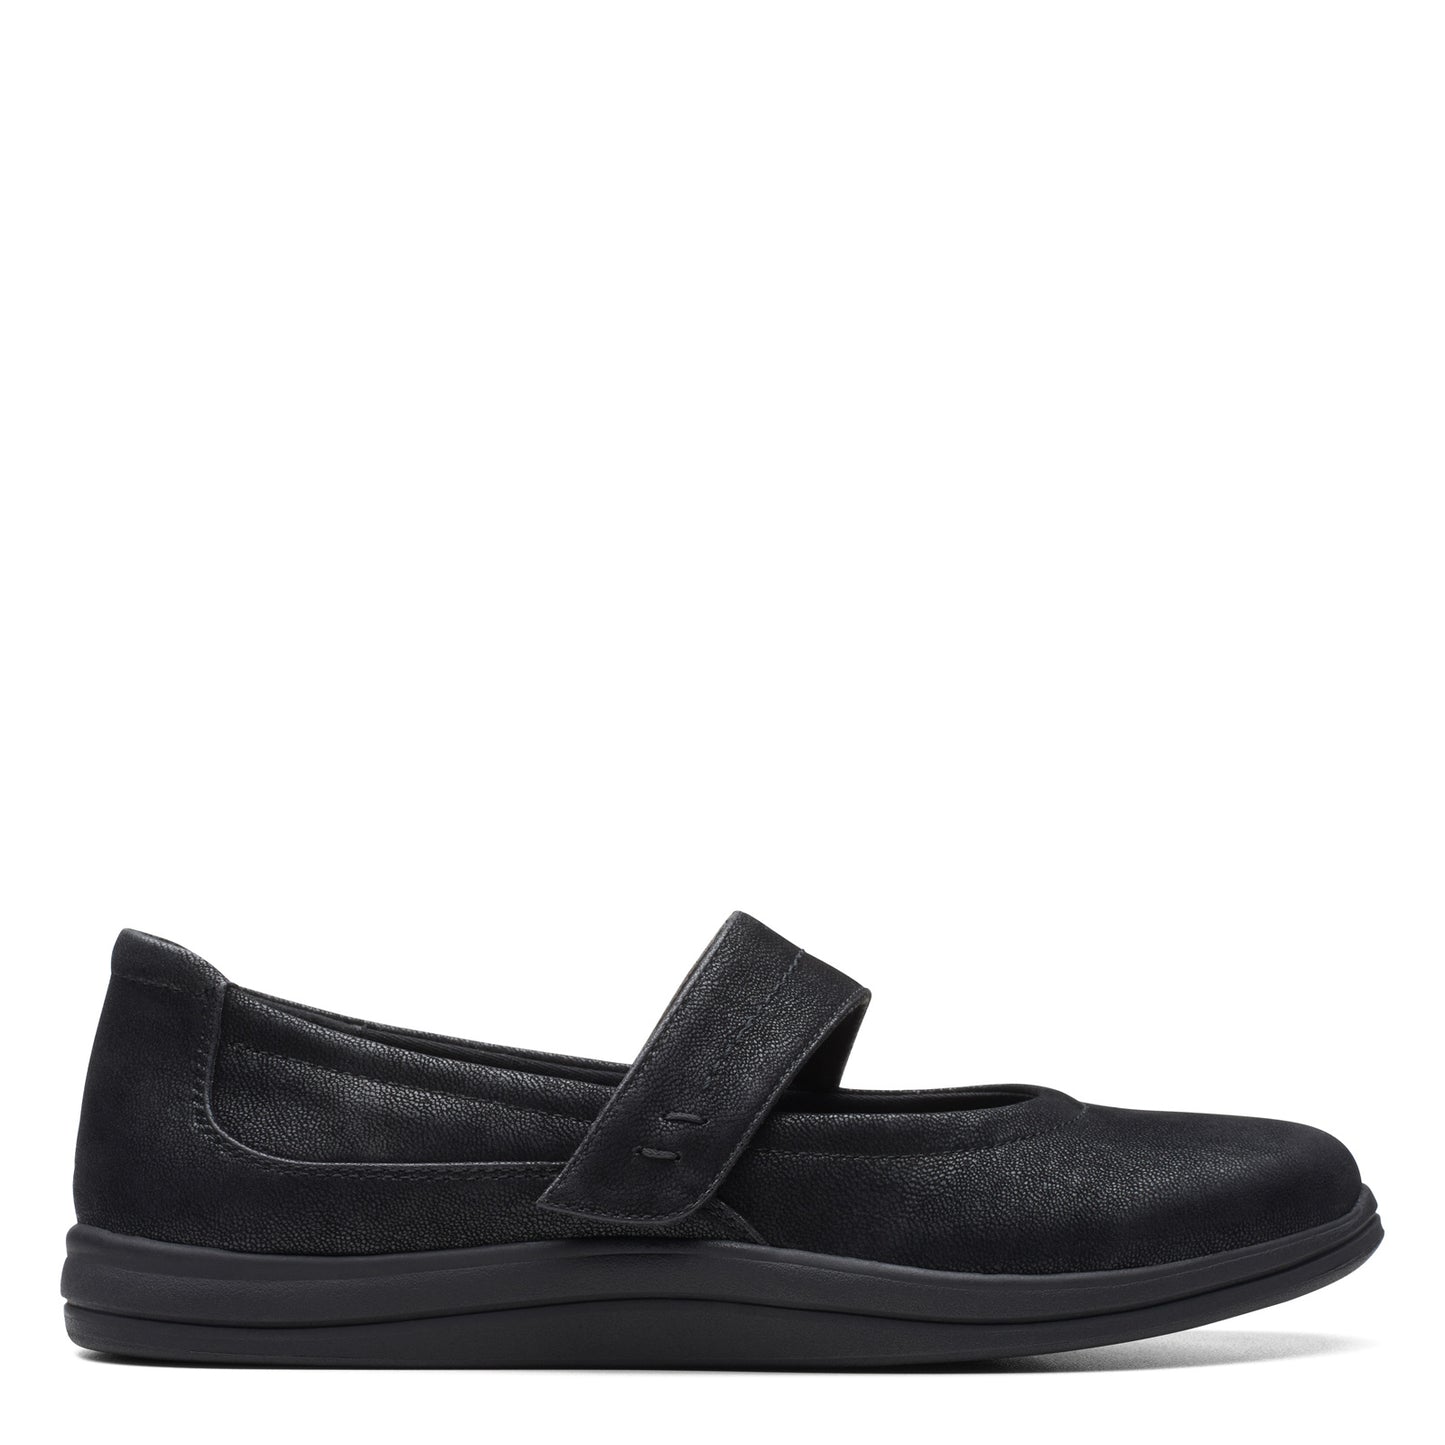 Peltz Shoes  Women's Clarks Breeze MJ Slip-On BLACK 26175009